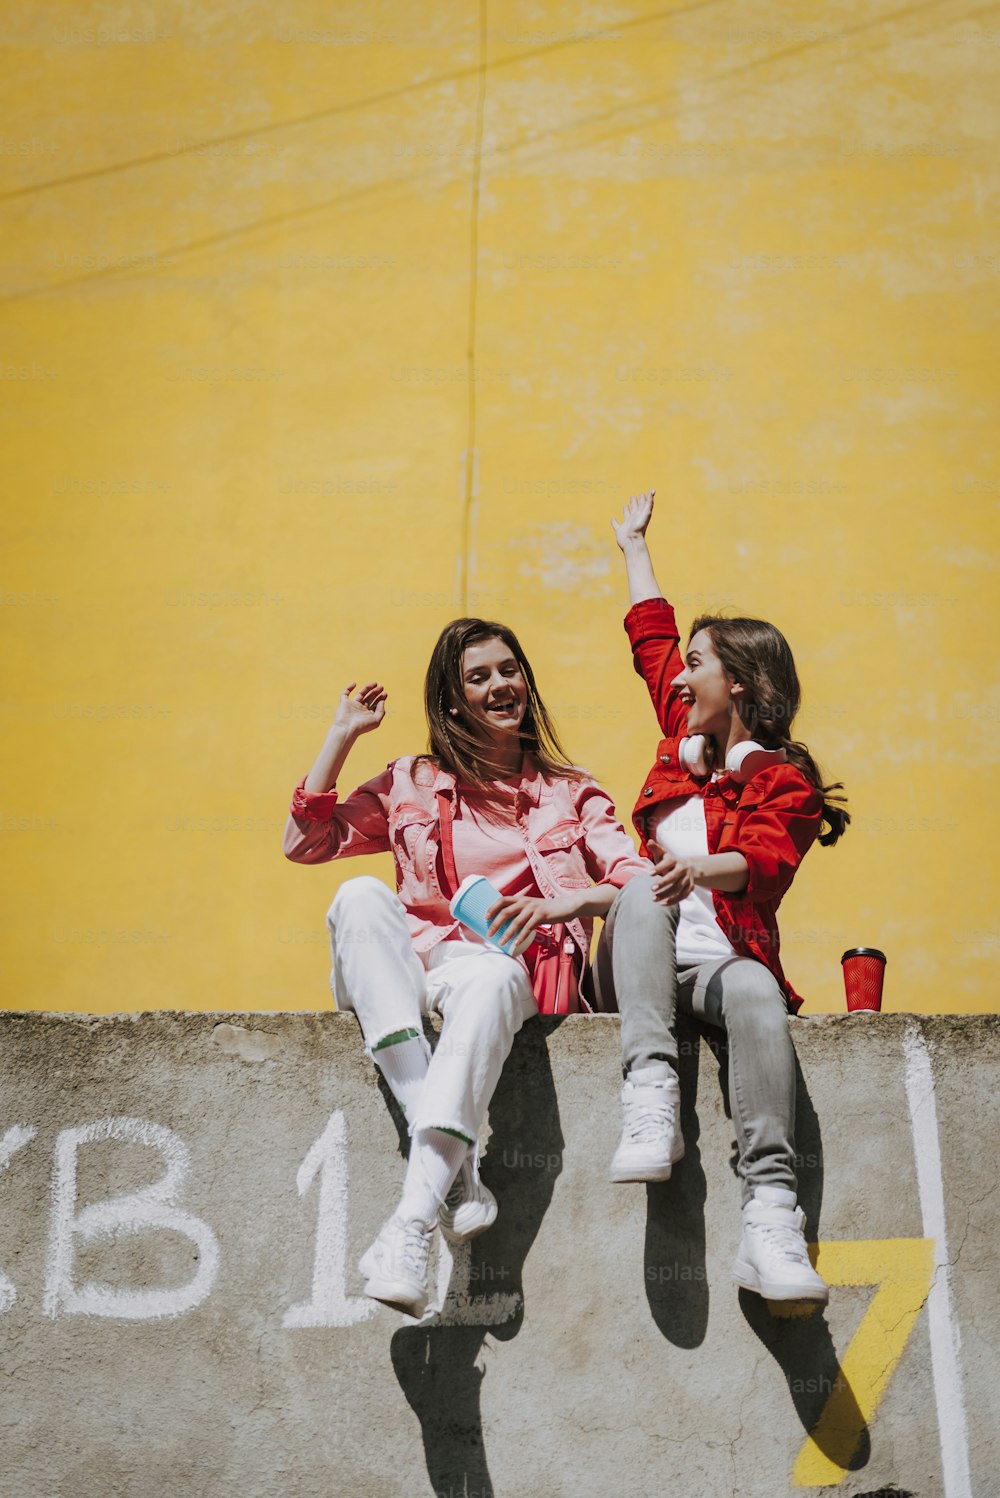 Urbanes Lifestyle-Konzept. Ganzkörperporträt zweier glücklicher junger Hipster-Damen, die sich gemeinsam auf der Brüstung mit einer Tasse Kaffee amüsieren